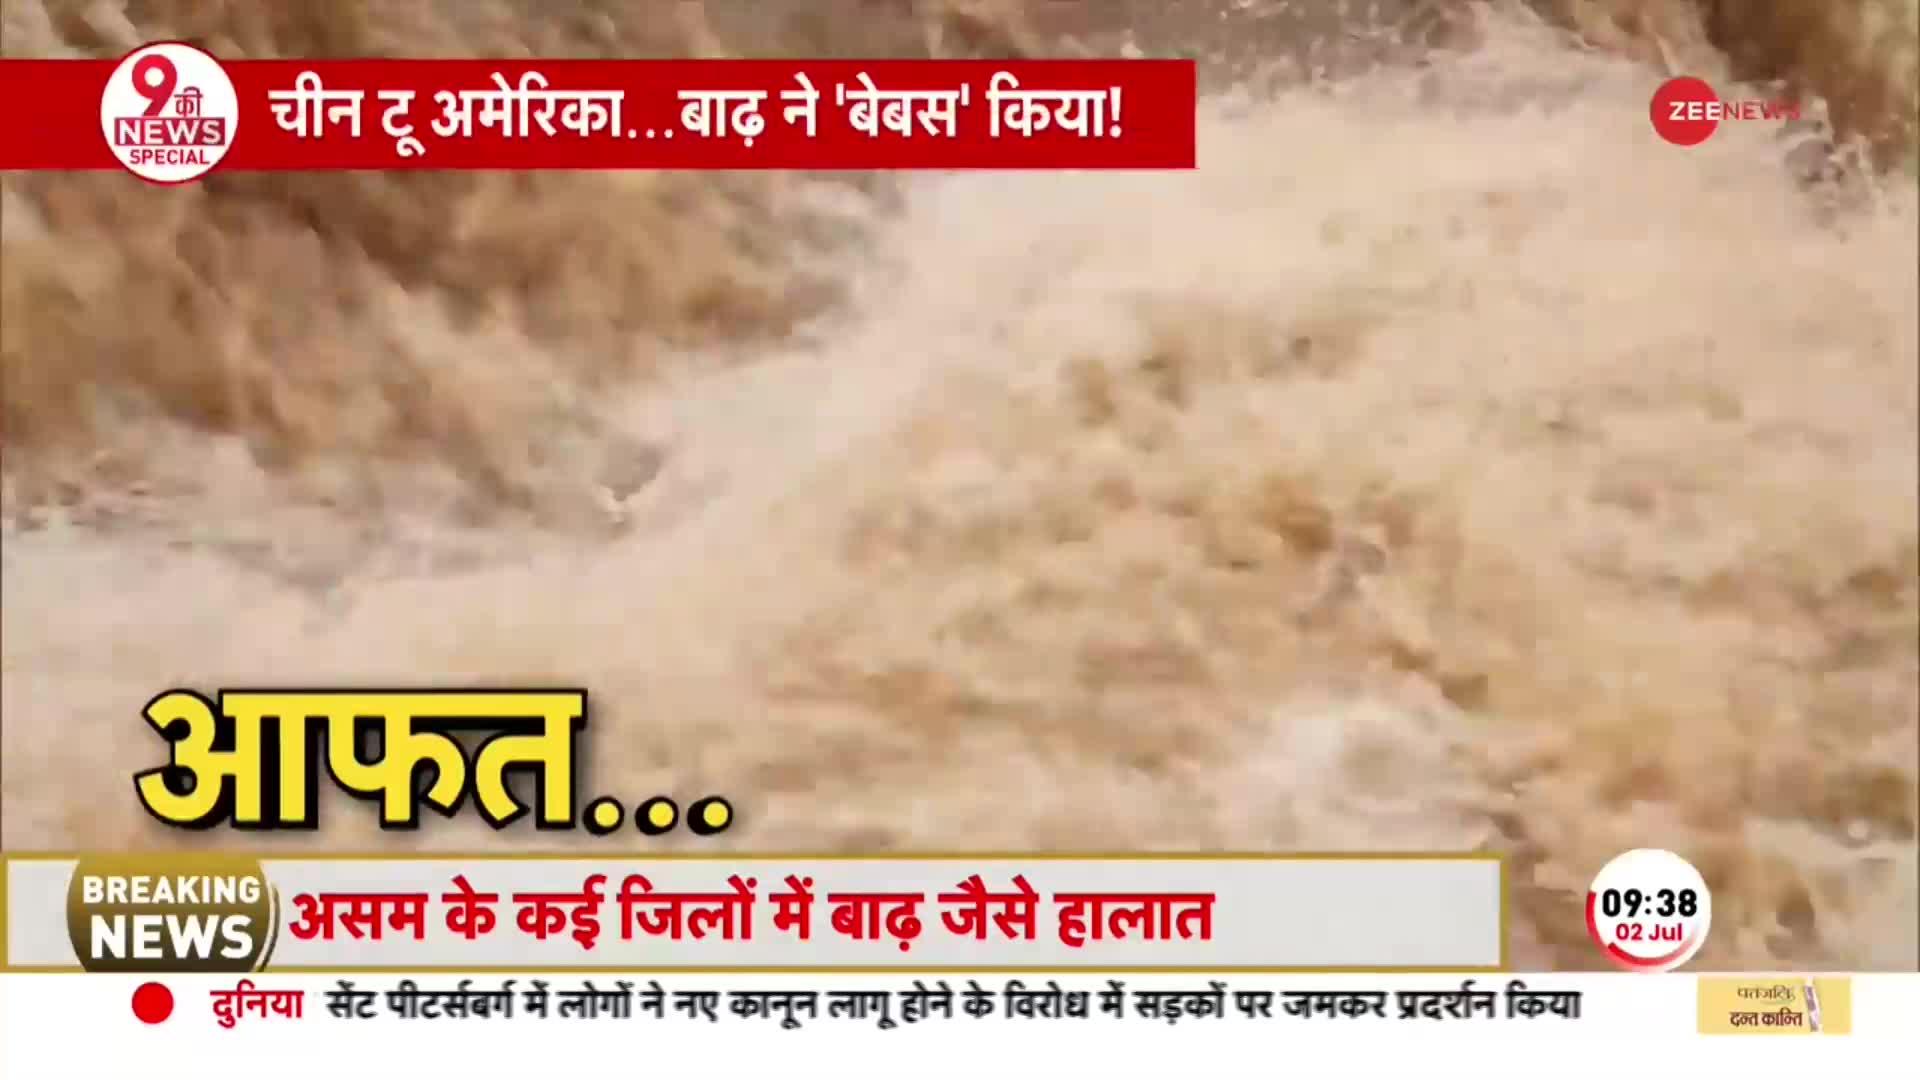 Flood News: Gujarat से Rajasthan बाढ़-बारिश से हर ओर तबाही-बर्बादी का मंजर